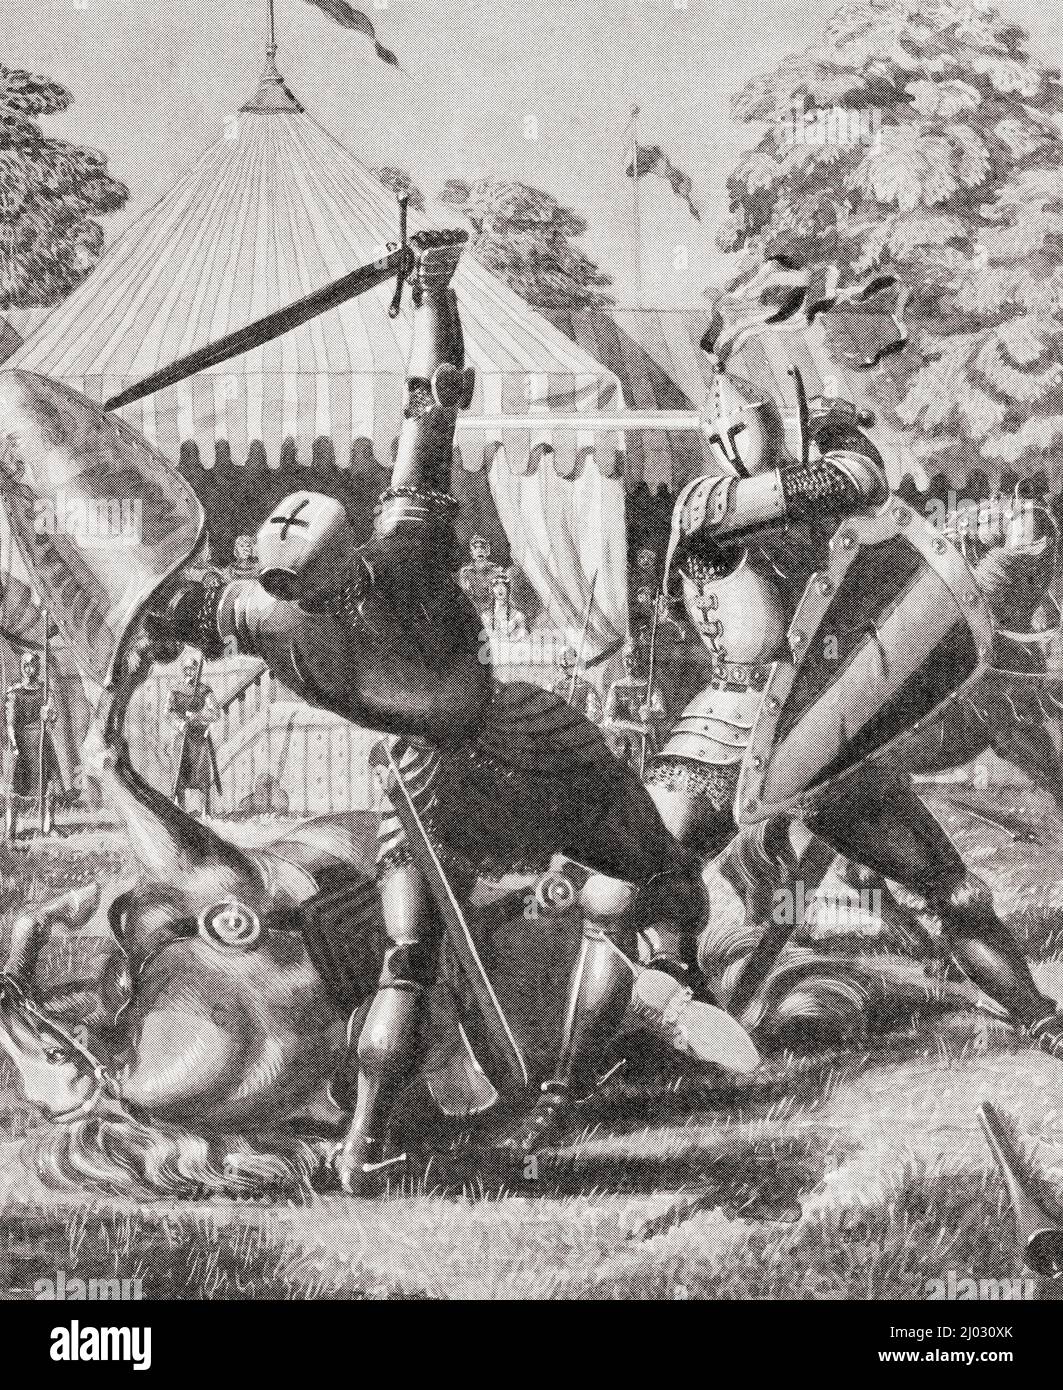 Zwei Ritter kämpfen in der Zeit von König Arthur. Aus dem Wunderland des Wissens, erschienen um 1930 Stockfoto